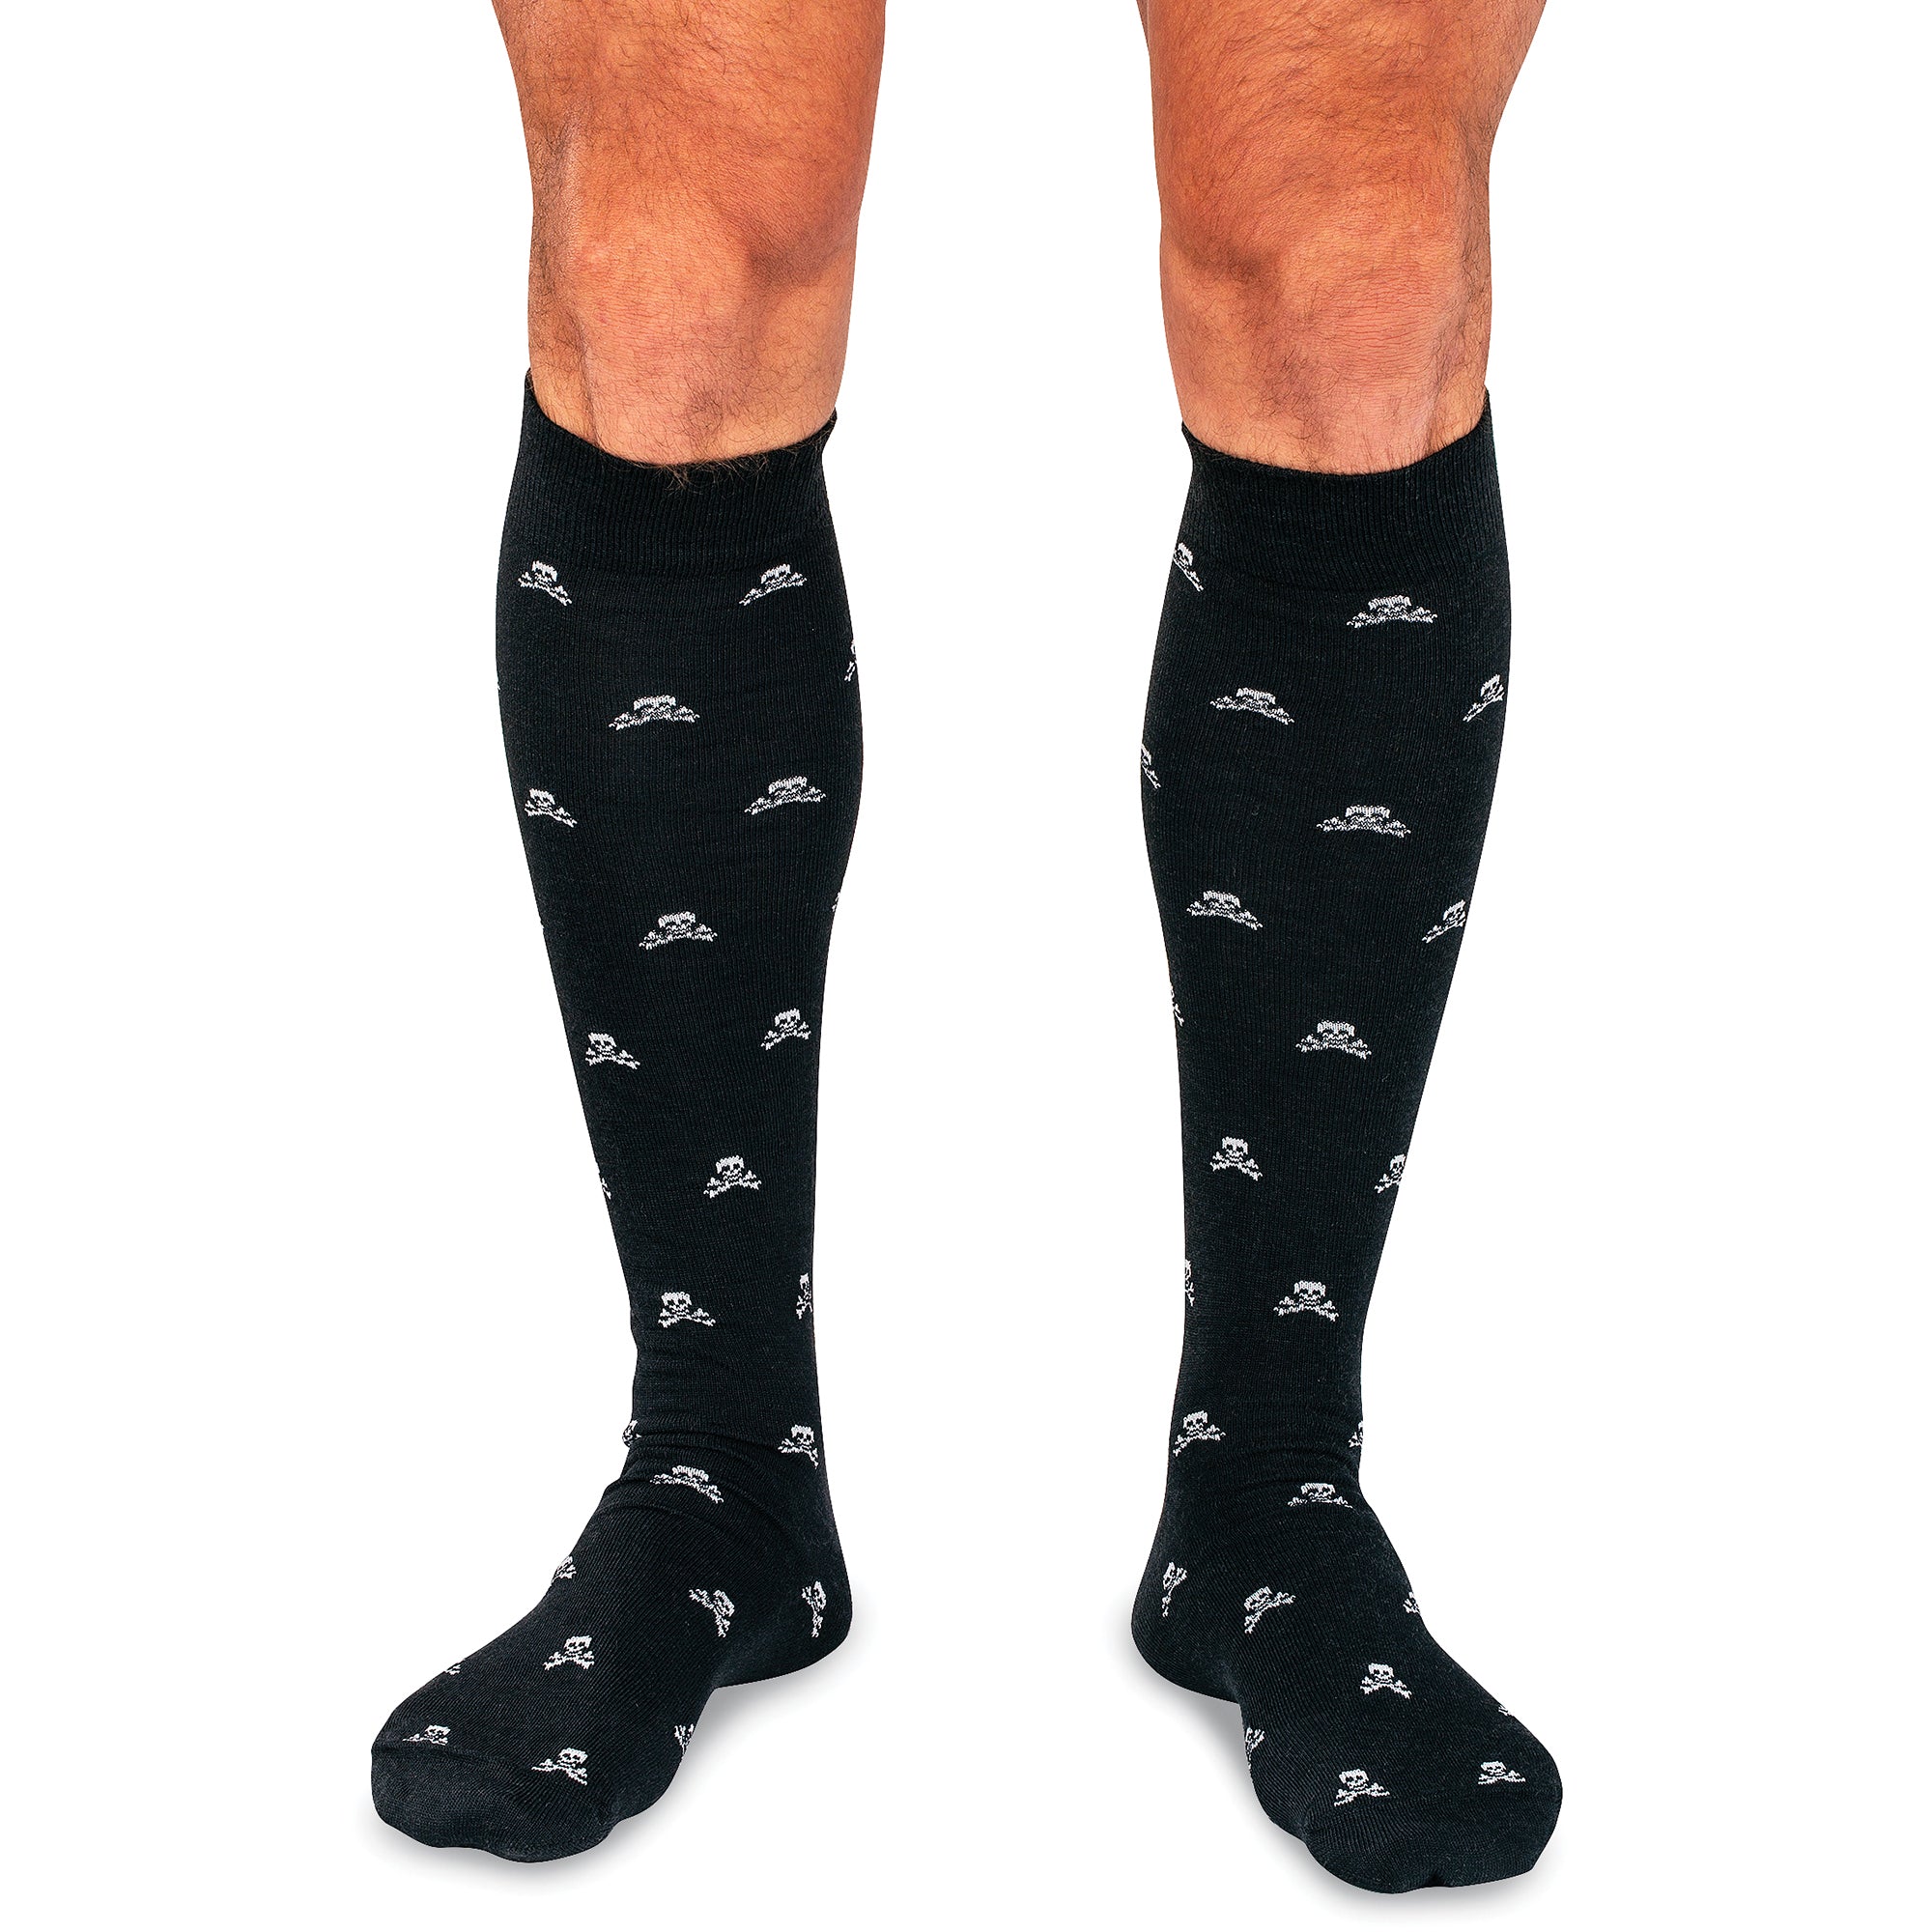 Jolly Roger on Black Merino Wool Over the Calf Dress Socks